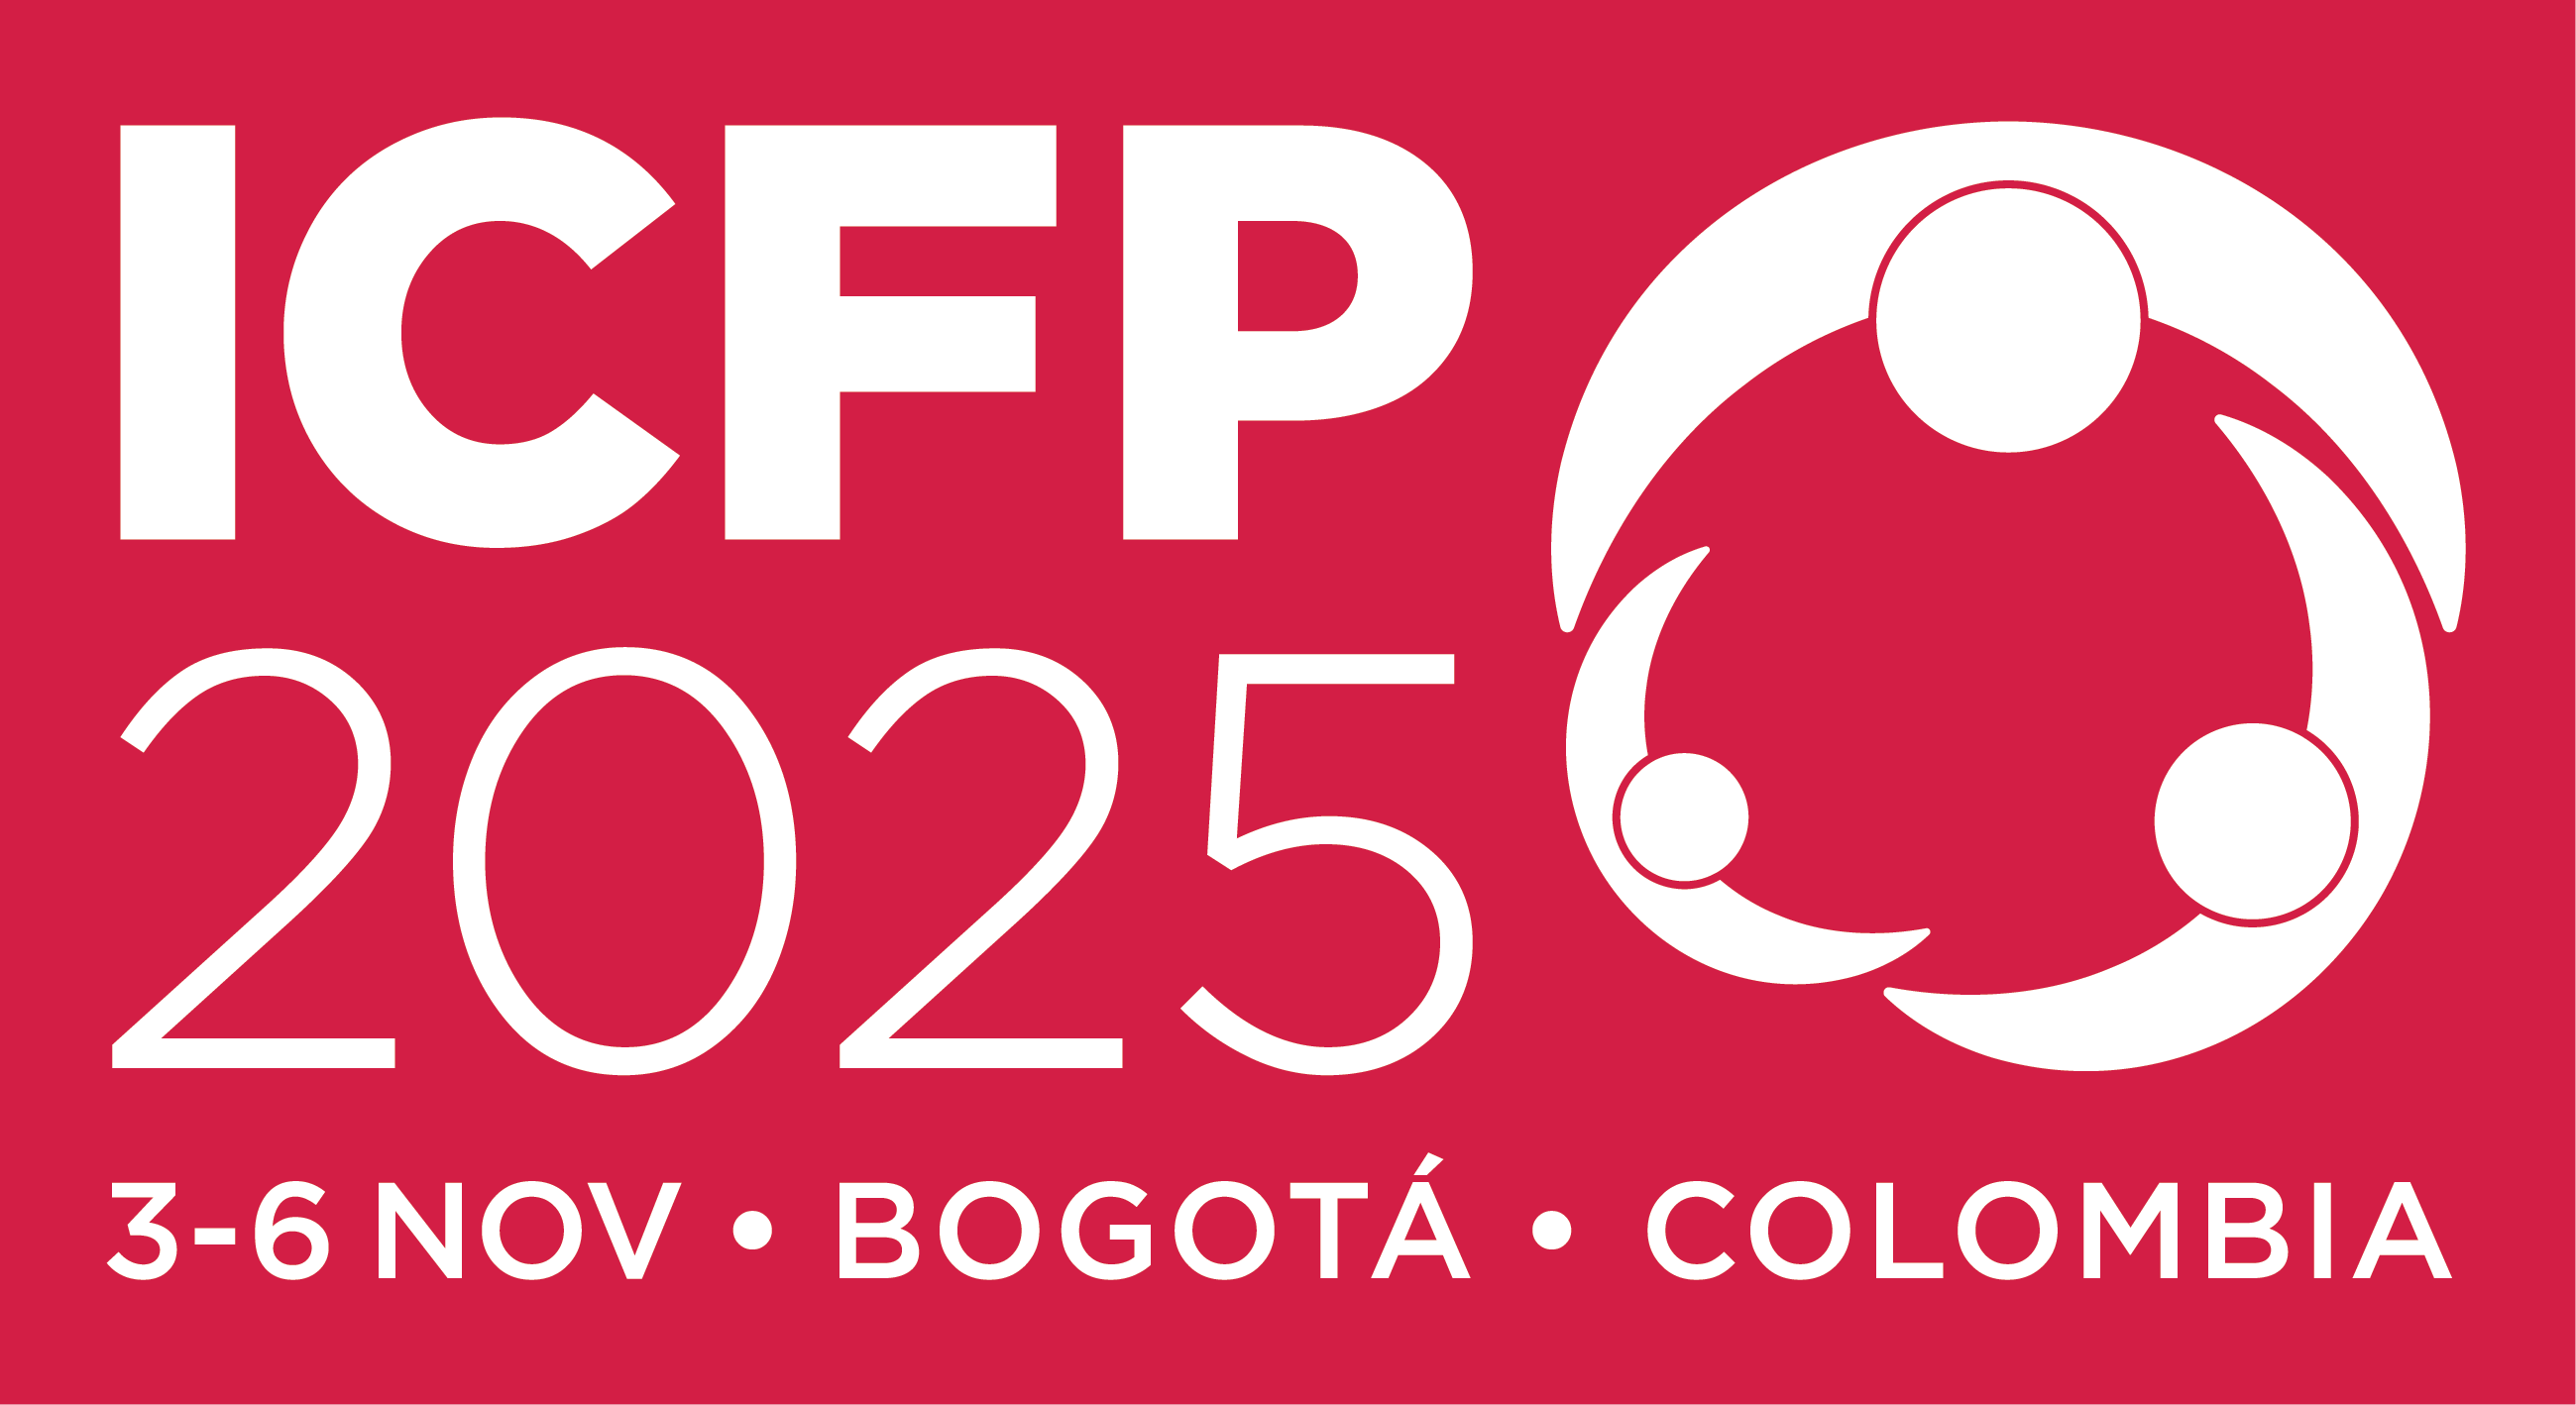 Bogota, en Colombie, entre dans l'histoire en devenant le premier pays d'Amérique latine à accueillir la septième conférence internationale sur la planification familiale en novembre 2025